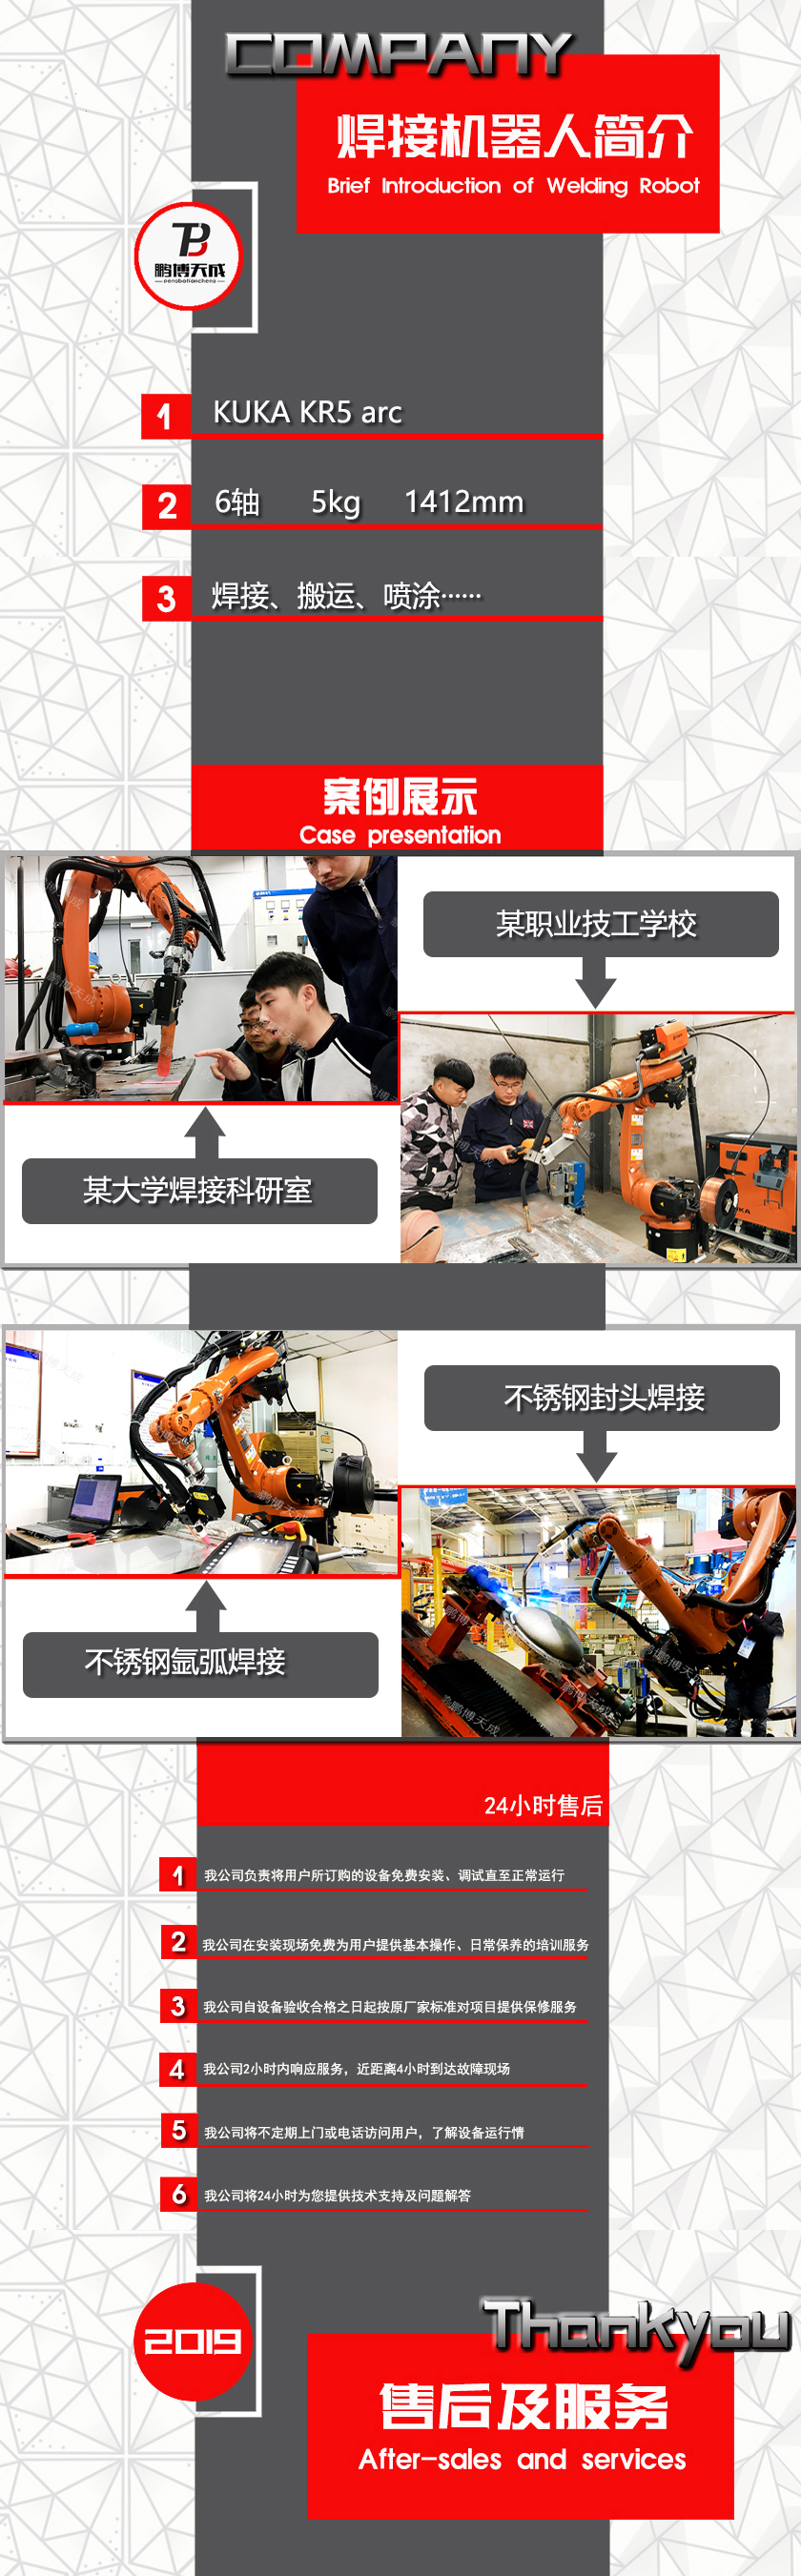 库卡焊接机器人KR5arc.jpg